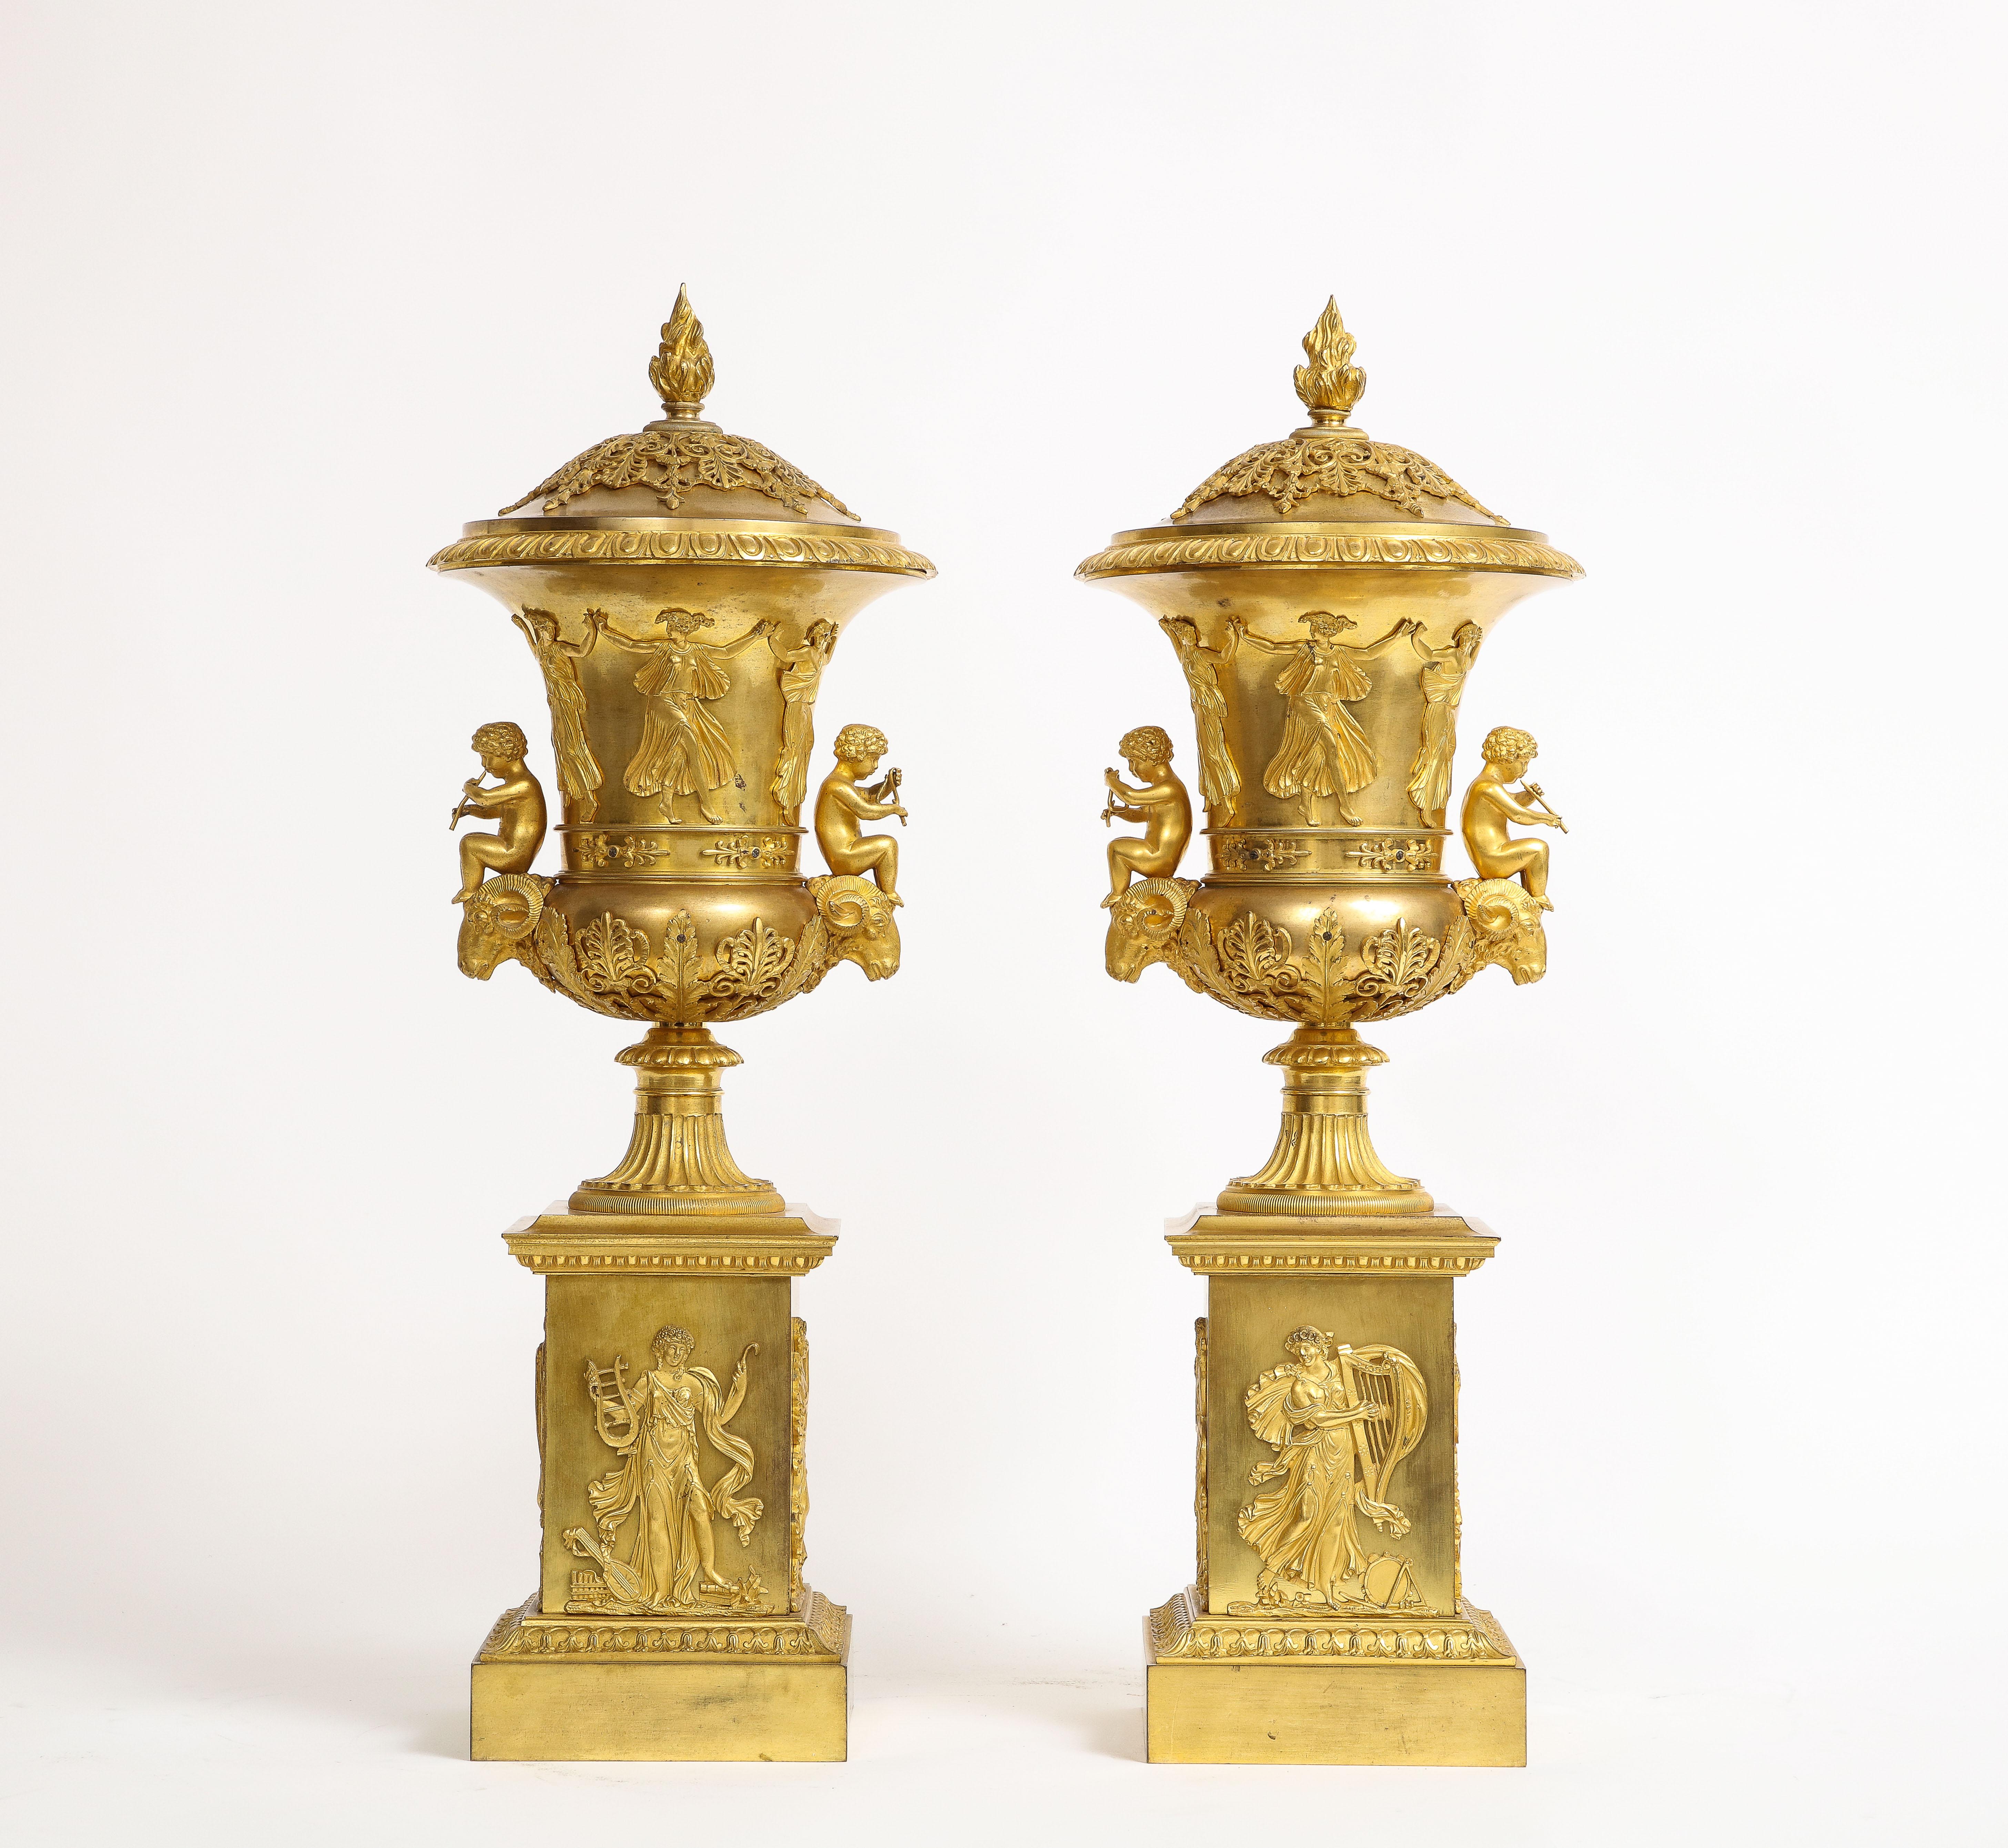 Une incroyable et rare paire de pots-pourris couverts en bronze doré du 19ème siècle, attribués à Thomier A Paris. Cette paire date de 1810, c'est-à-dire de l'illustre période de l'Empire français. Ces urnes remarquables sont de parfaits exemples de